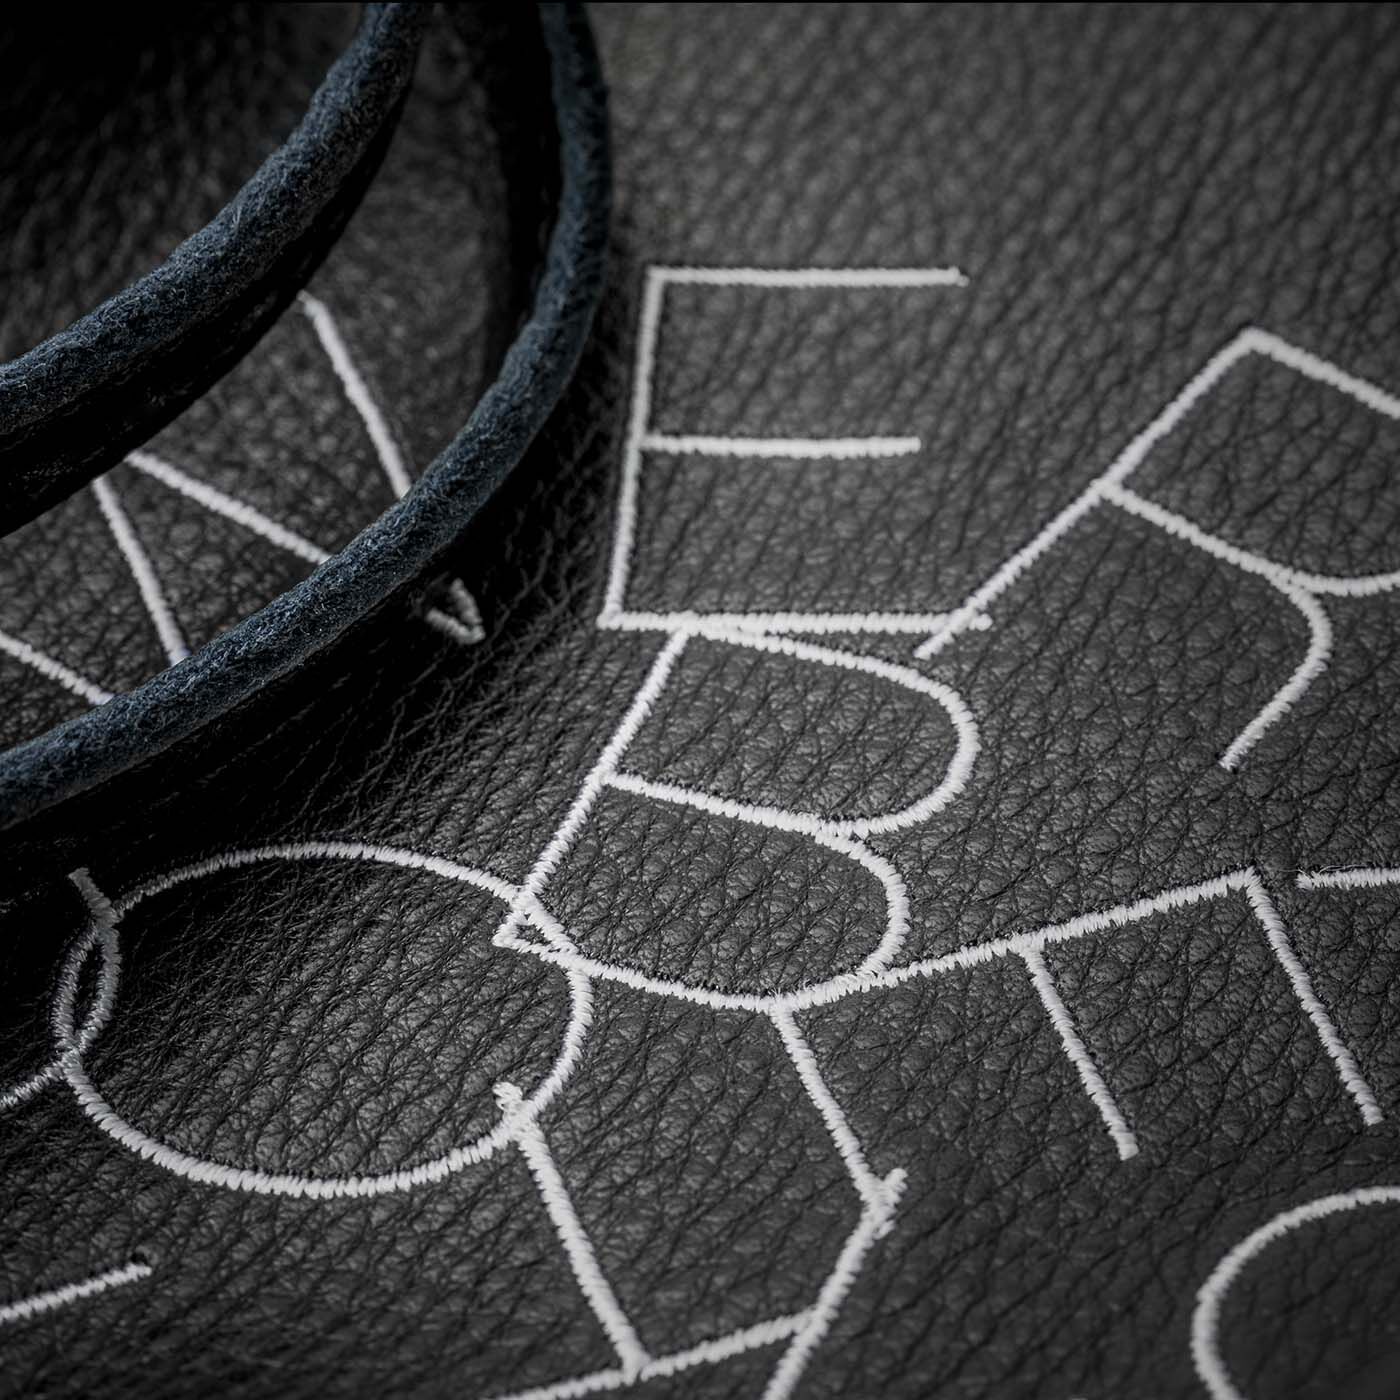 フェリシモコレクション|ブリリアンス神戸基金 KOBE PORT TOWER 福岡の鞄作家が作った 職人本革のカーポラヴォーロトート〈Black〉|鞄の表面には神戸ポートタワー公式ロゴが刺しゅうされています。